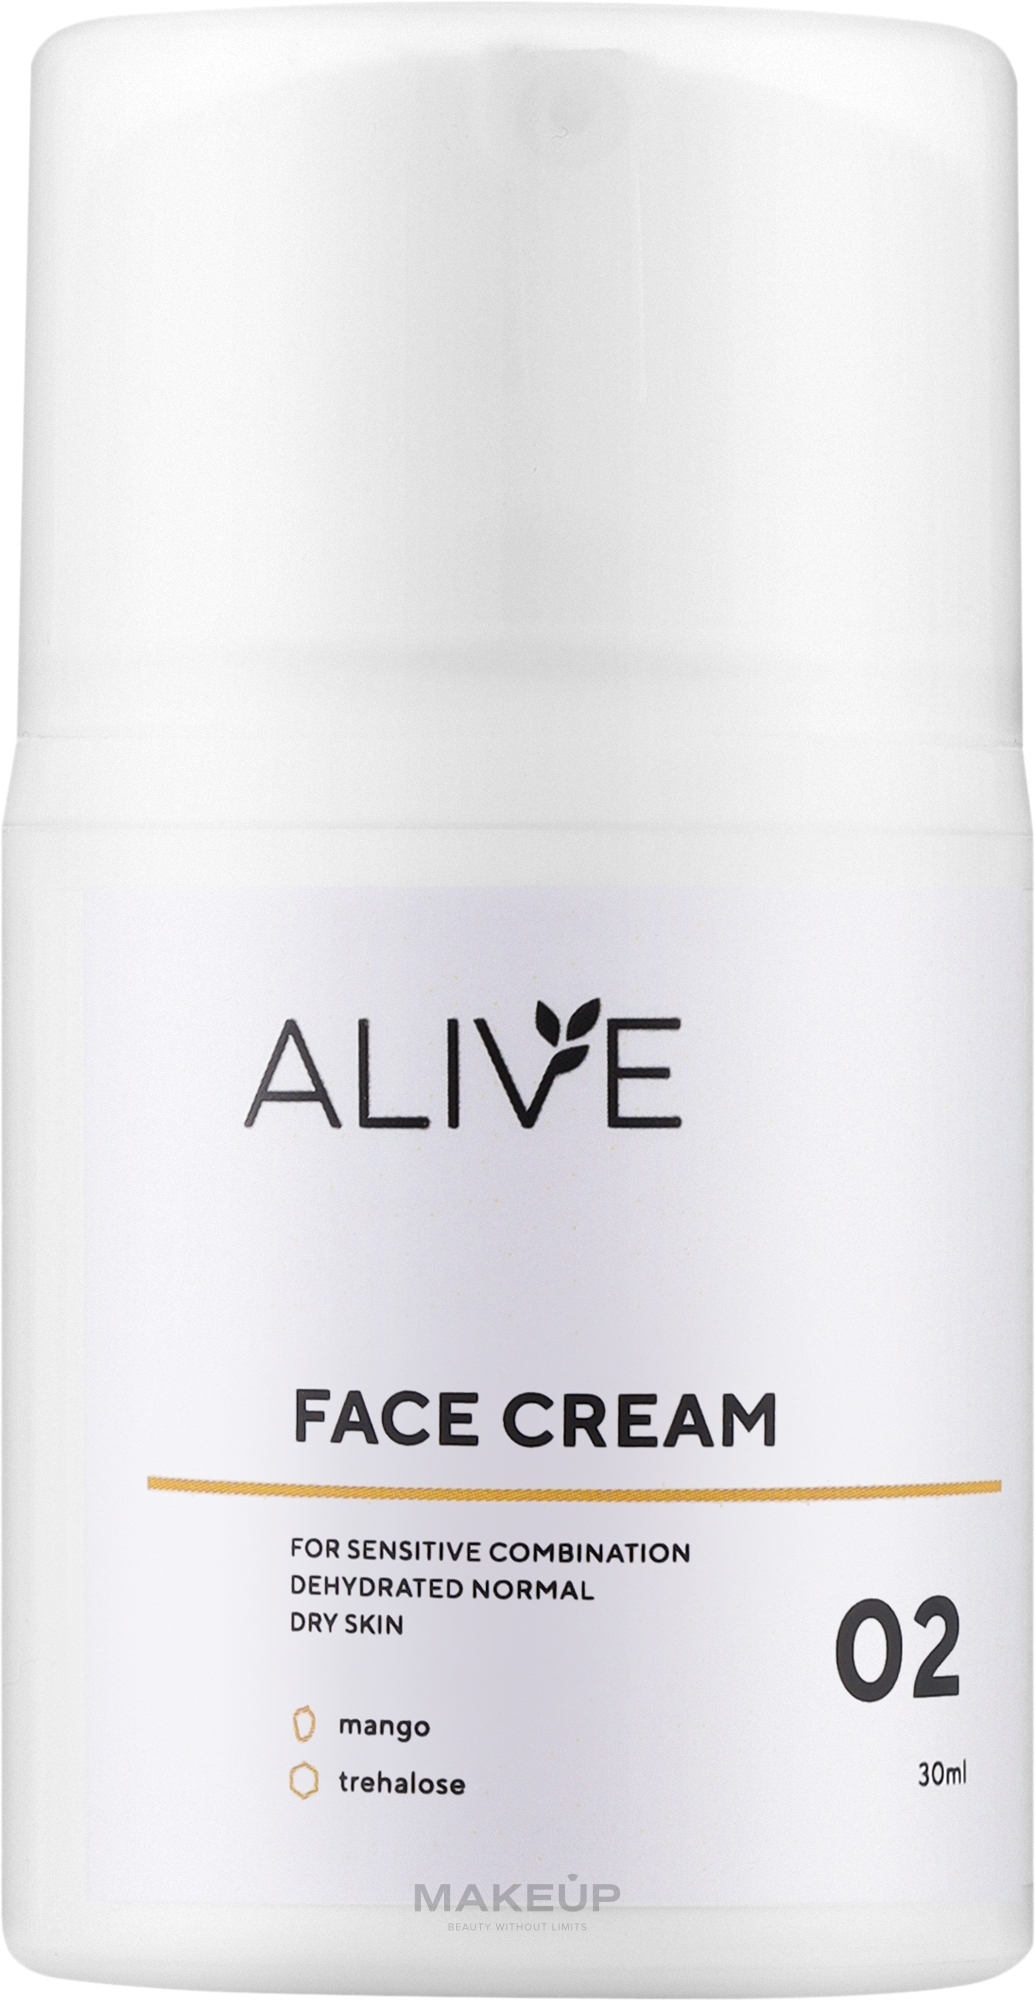 Крем для сухой, нормальной, комбинированной и чувствительной кожи - ALIVE Cosmetics Face Cream 02 — фото 30ml